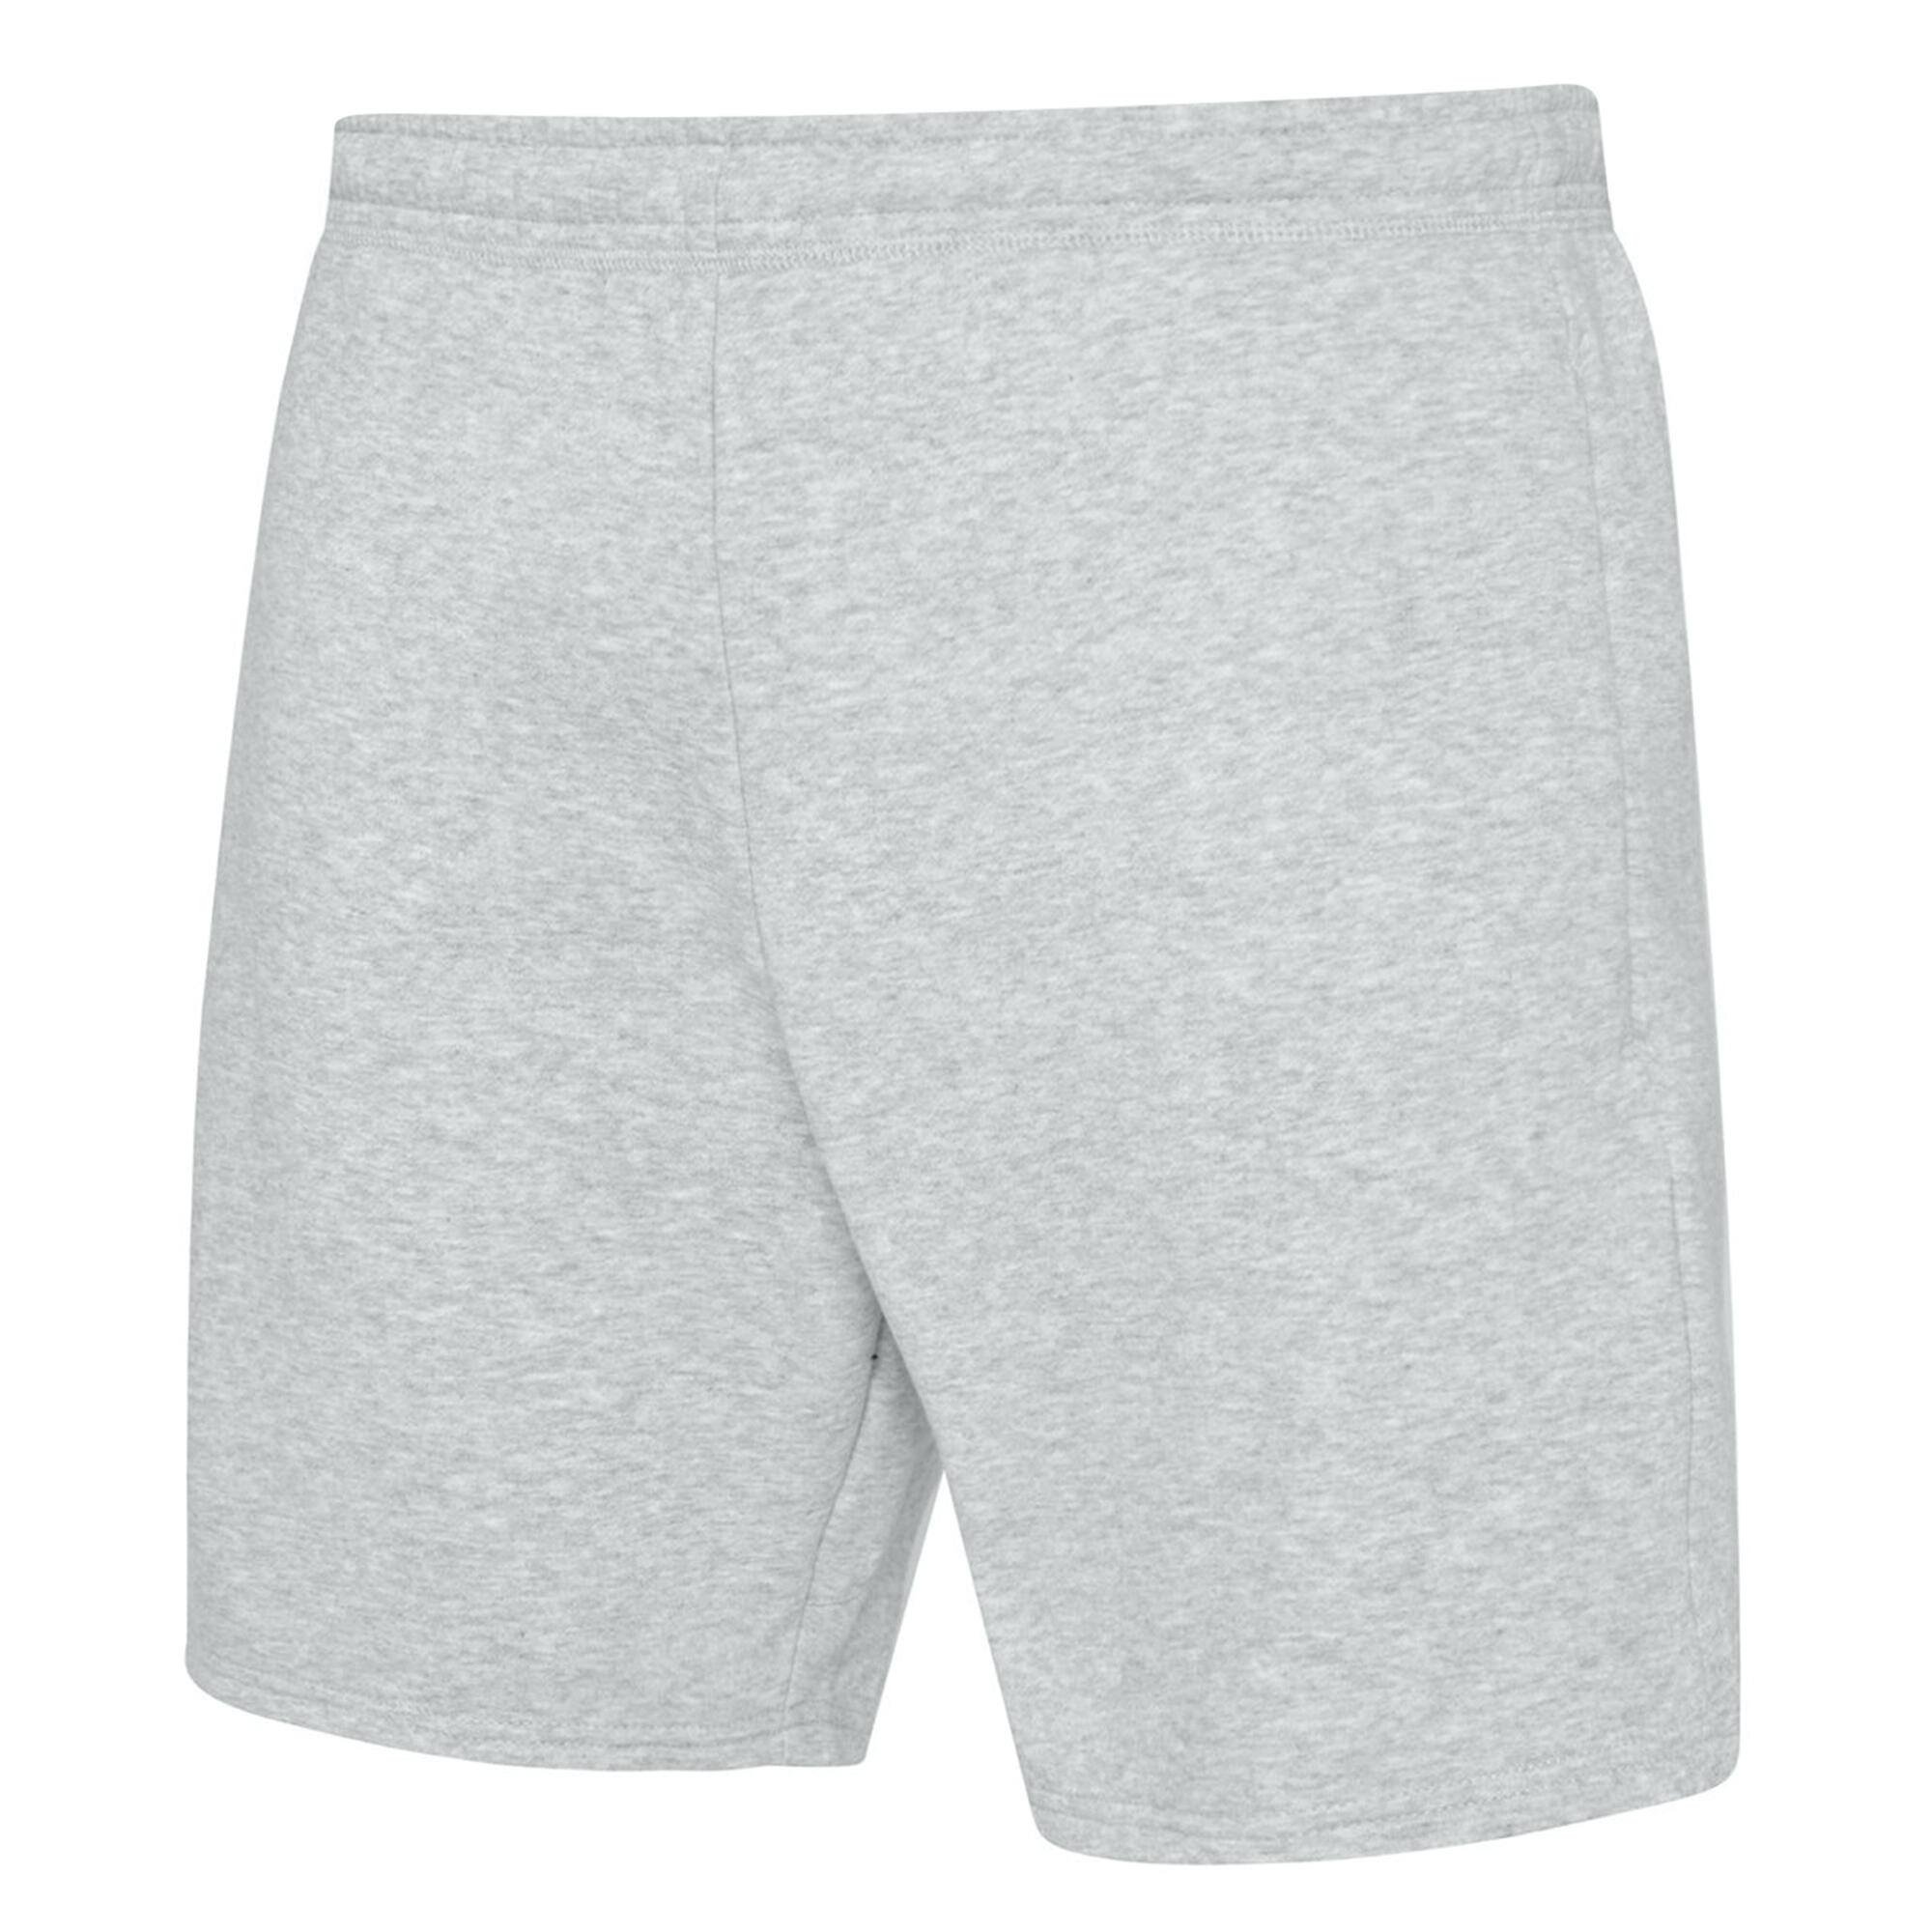 Mens Club Leisure Shorts (Grey Marl/White) 2/4